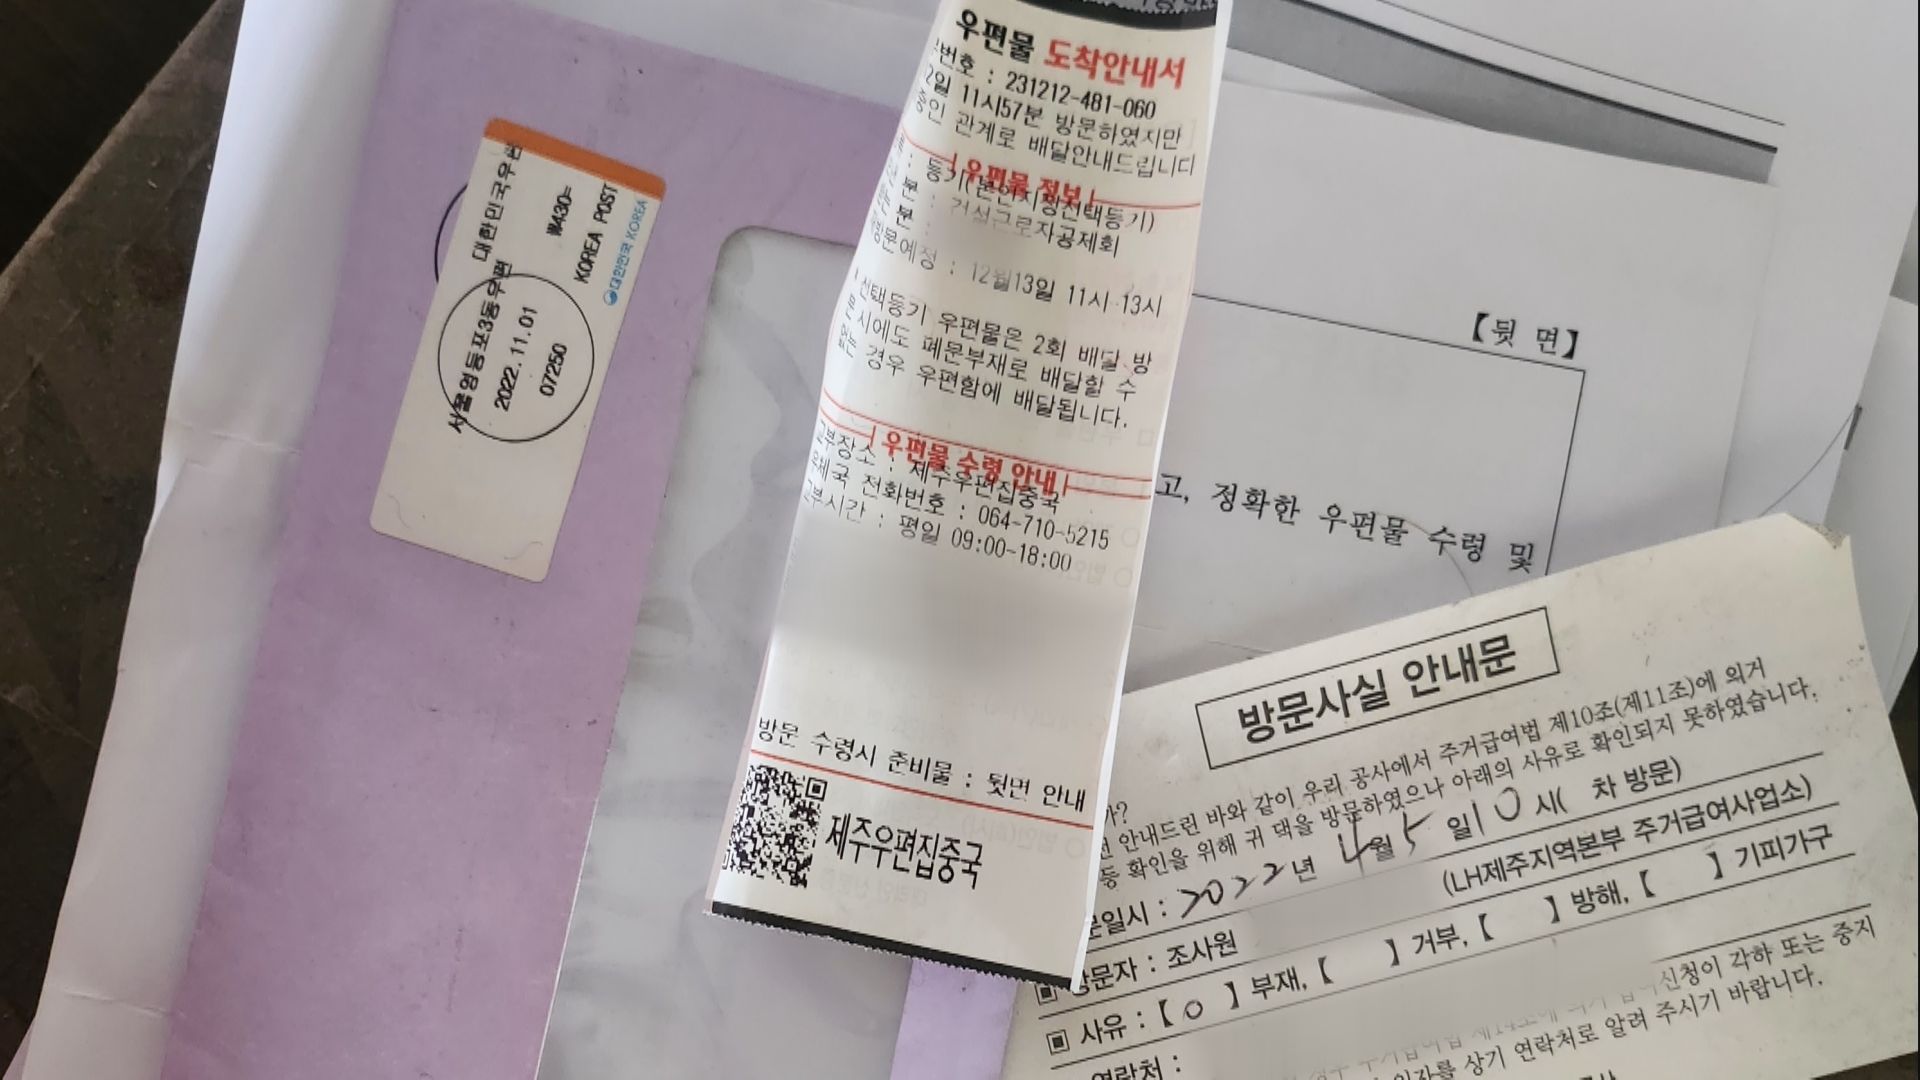 오늘(19일) 김 씨가 살던 객실 앞에 있던 우편물들